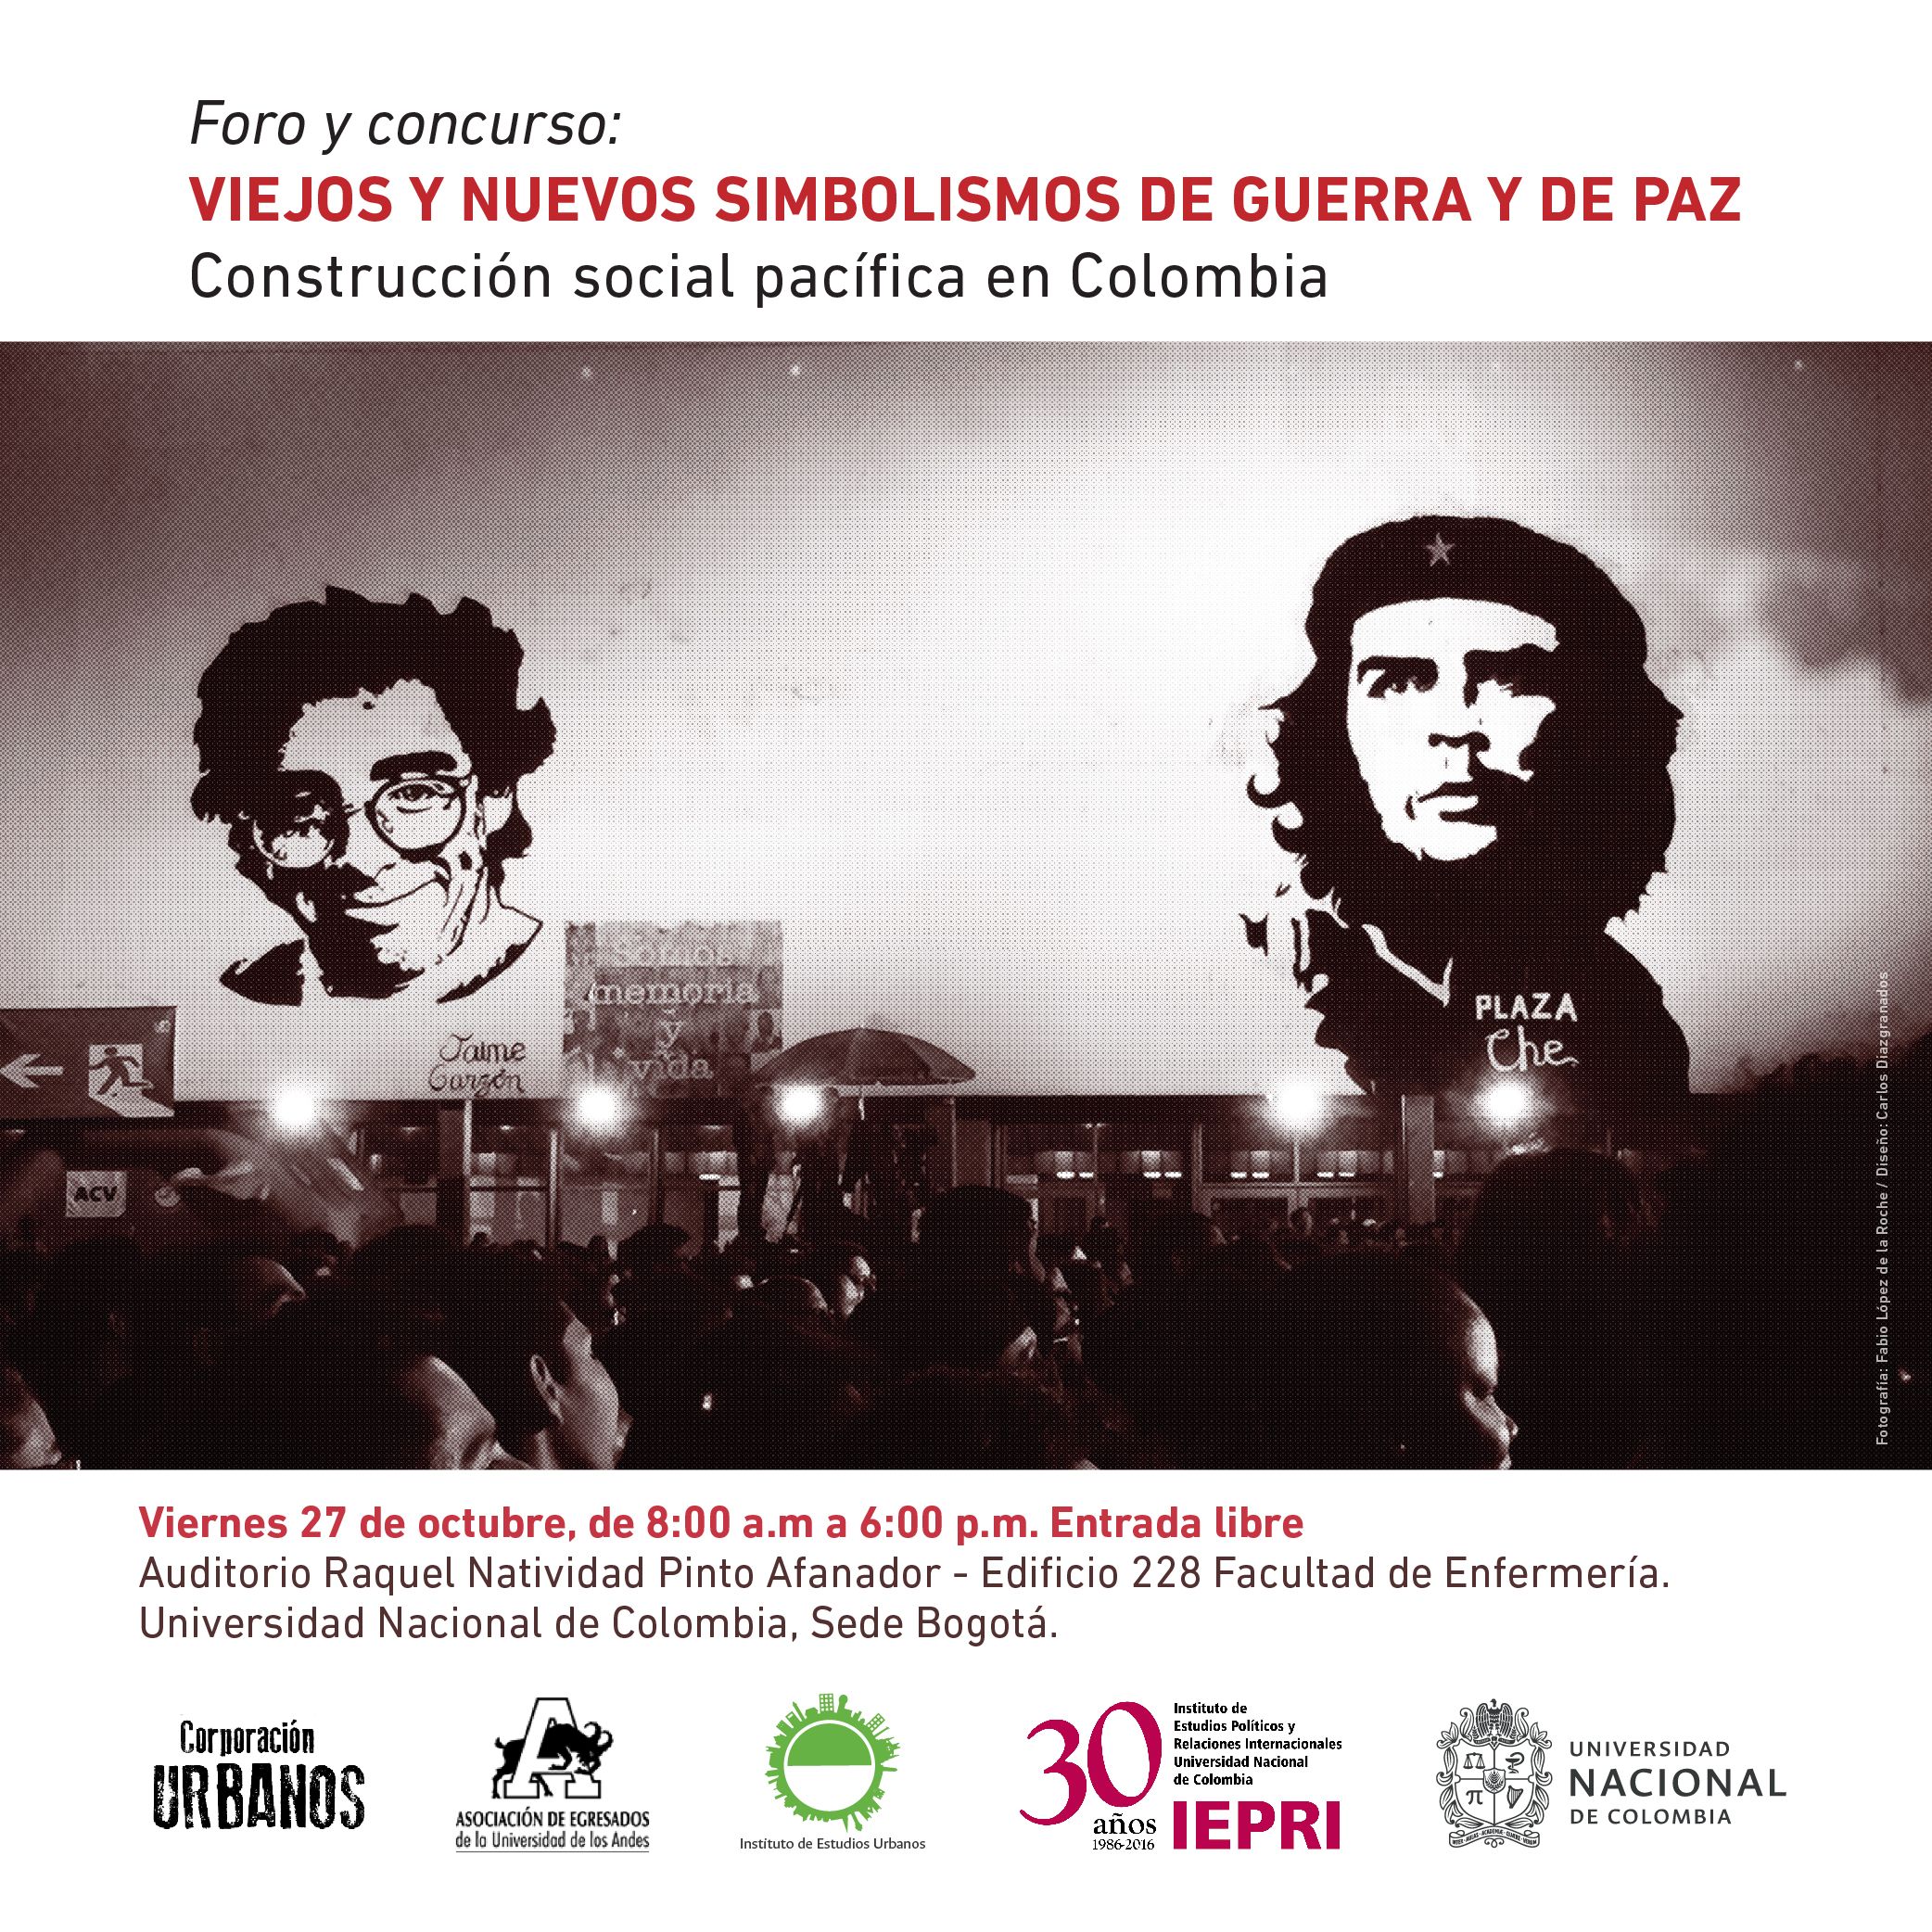 Foro Viejos y nuevos simbolismos de guerra y de paz: Construcción social pacífica en Colombia